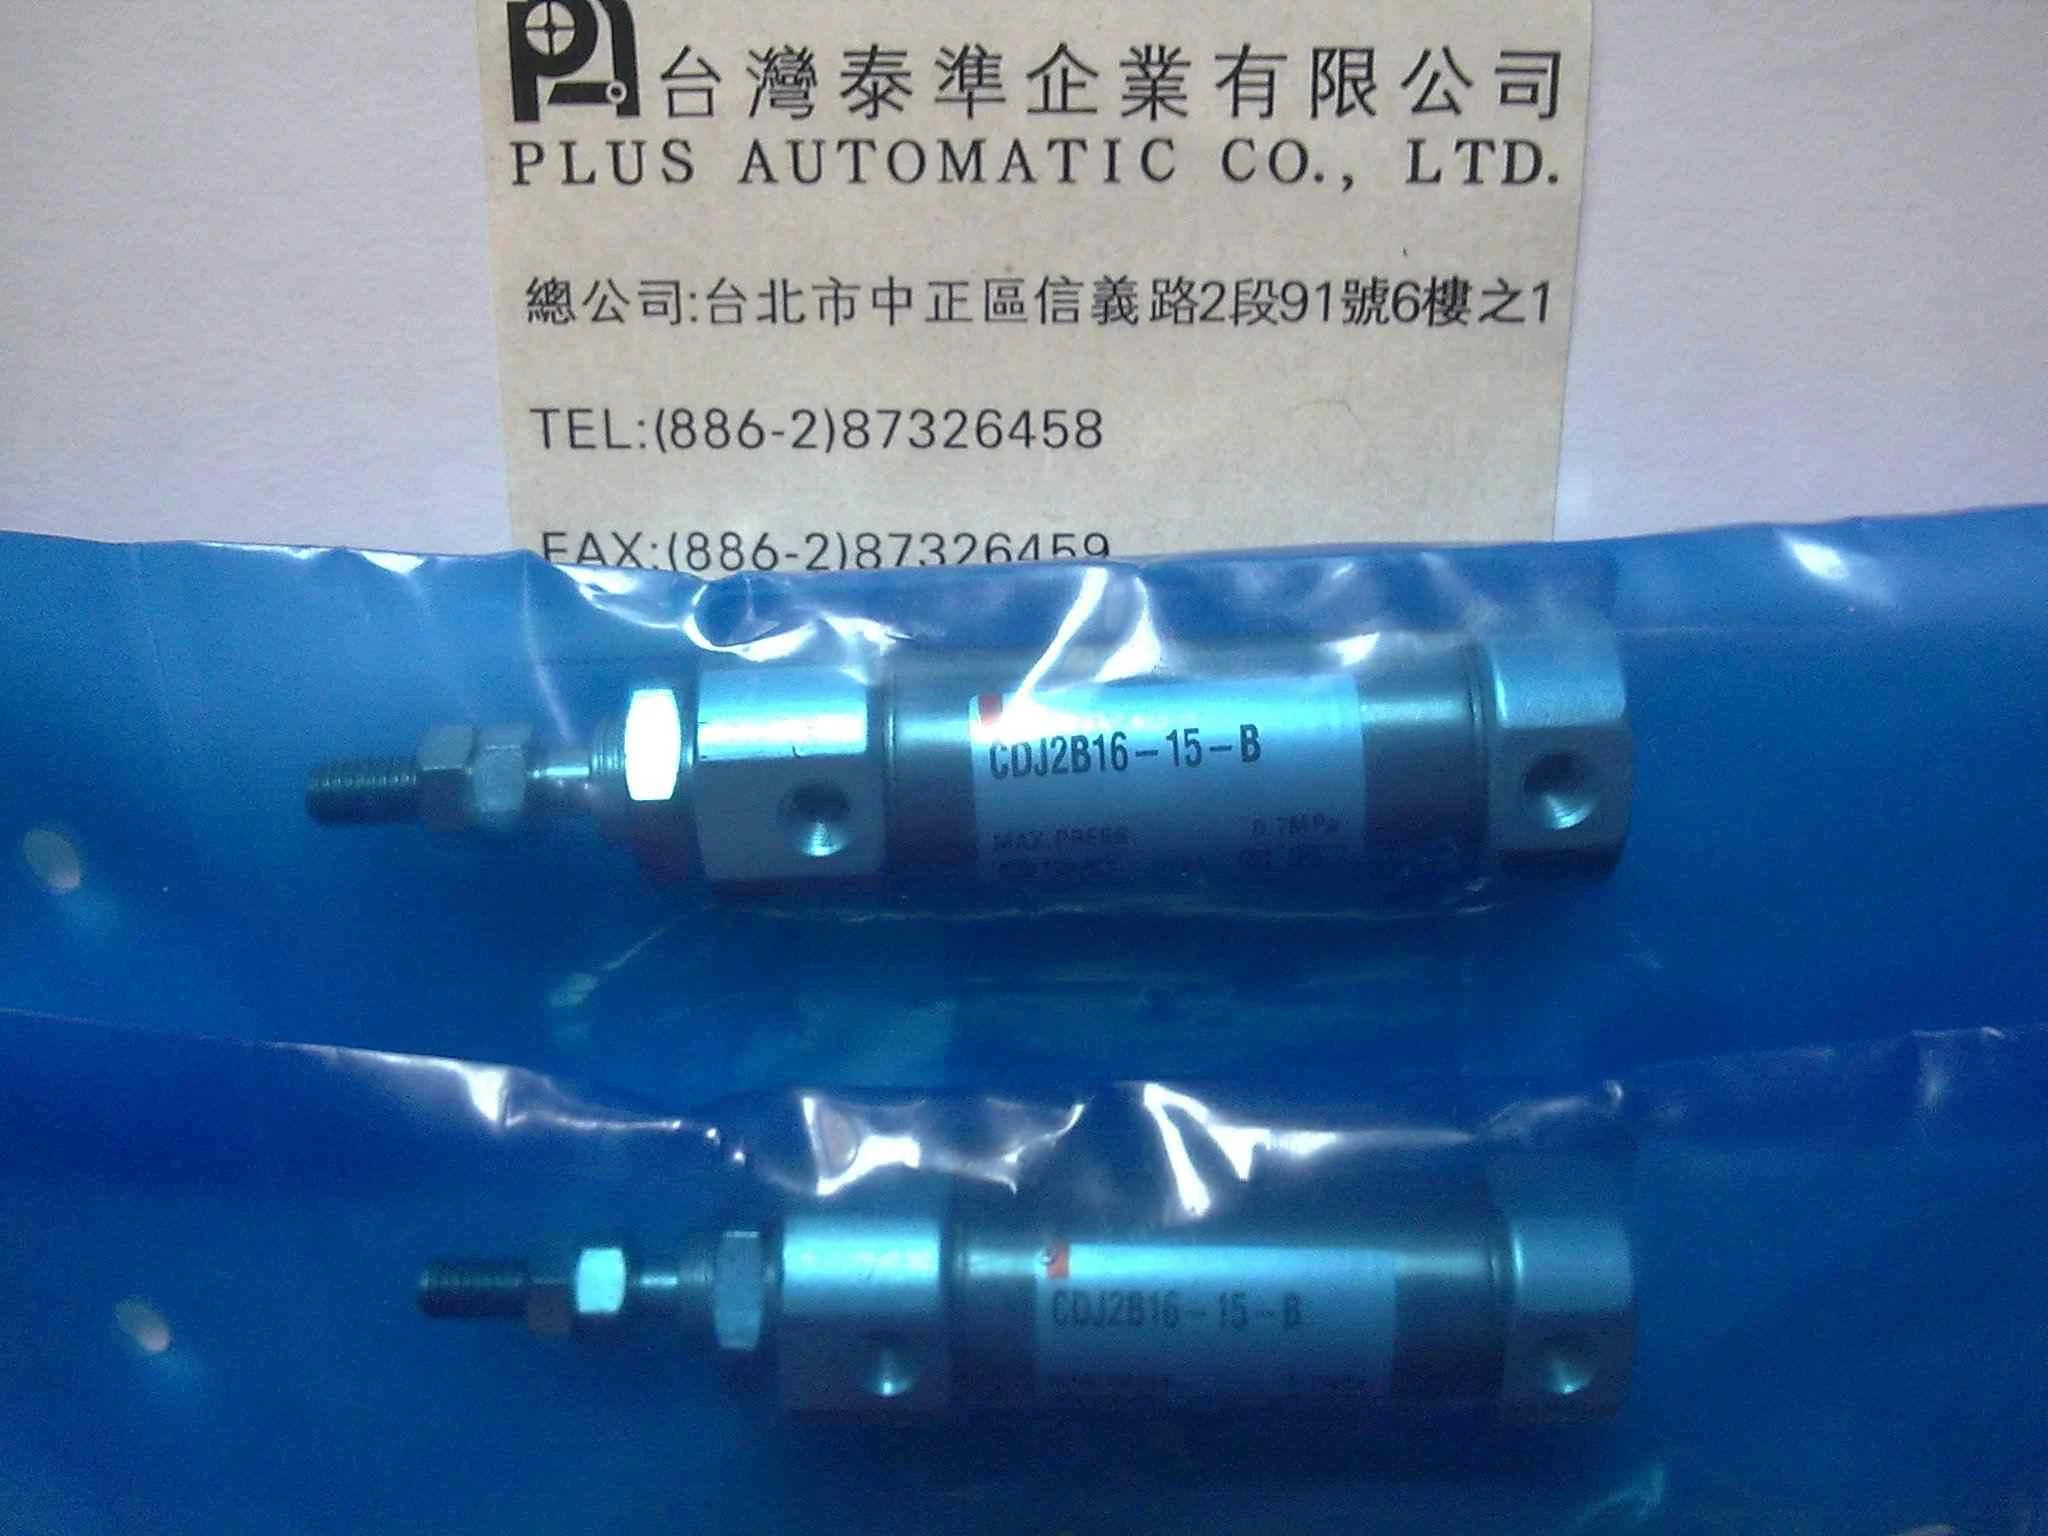 日本SMC 筆型氣壓缸CDJ2B16-15-B